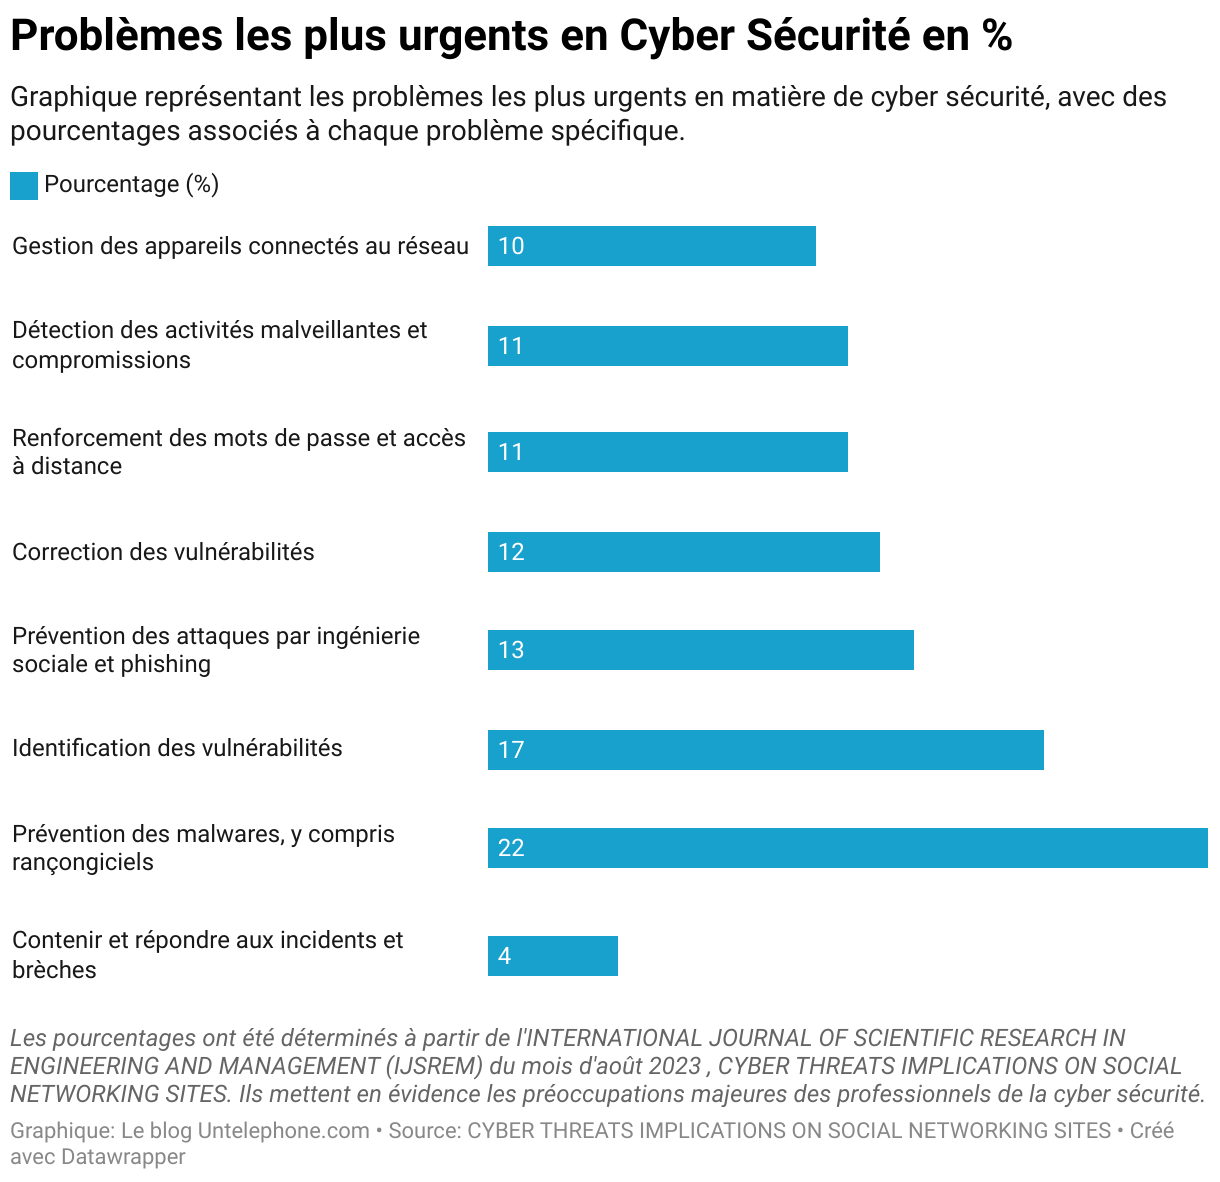 Graphique détaillant les principaux problèmes en matière de cyber sécurité. Les préoccupations varient de la gestion des appareils connectés au réseau à 10%, à la prévention des malwares, notamment les rançongiciels, à 22%.